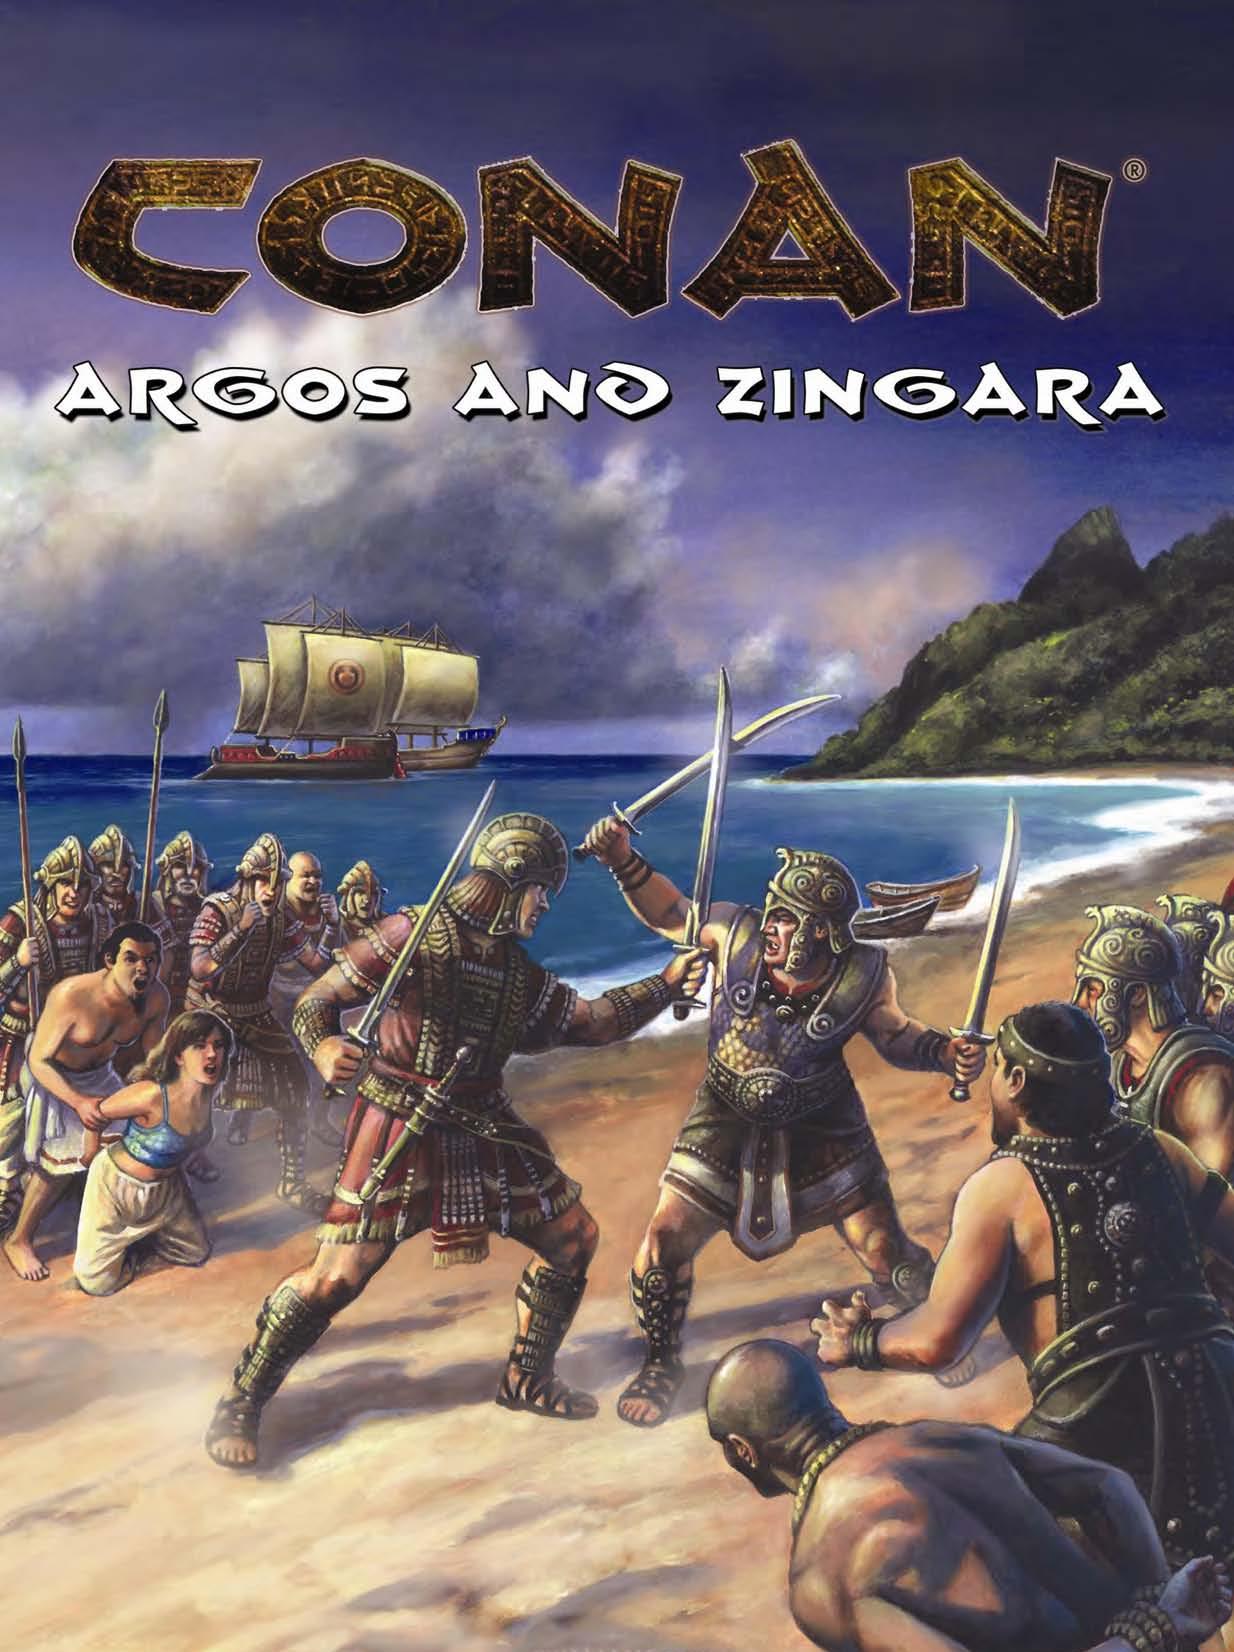 Conan D20 1e Argos and Zingara